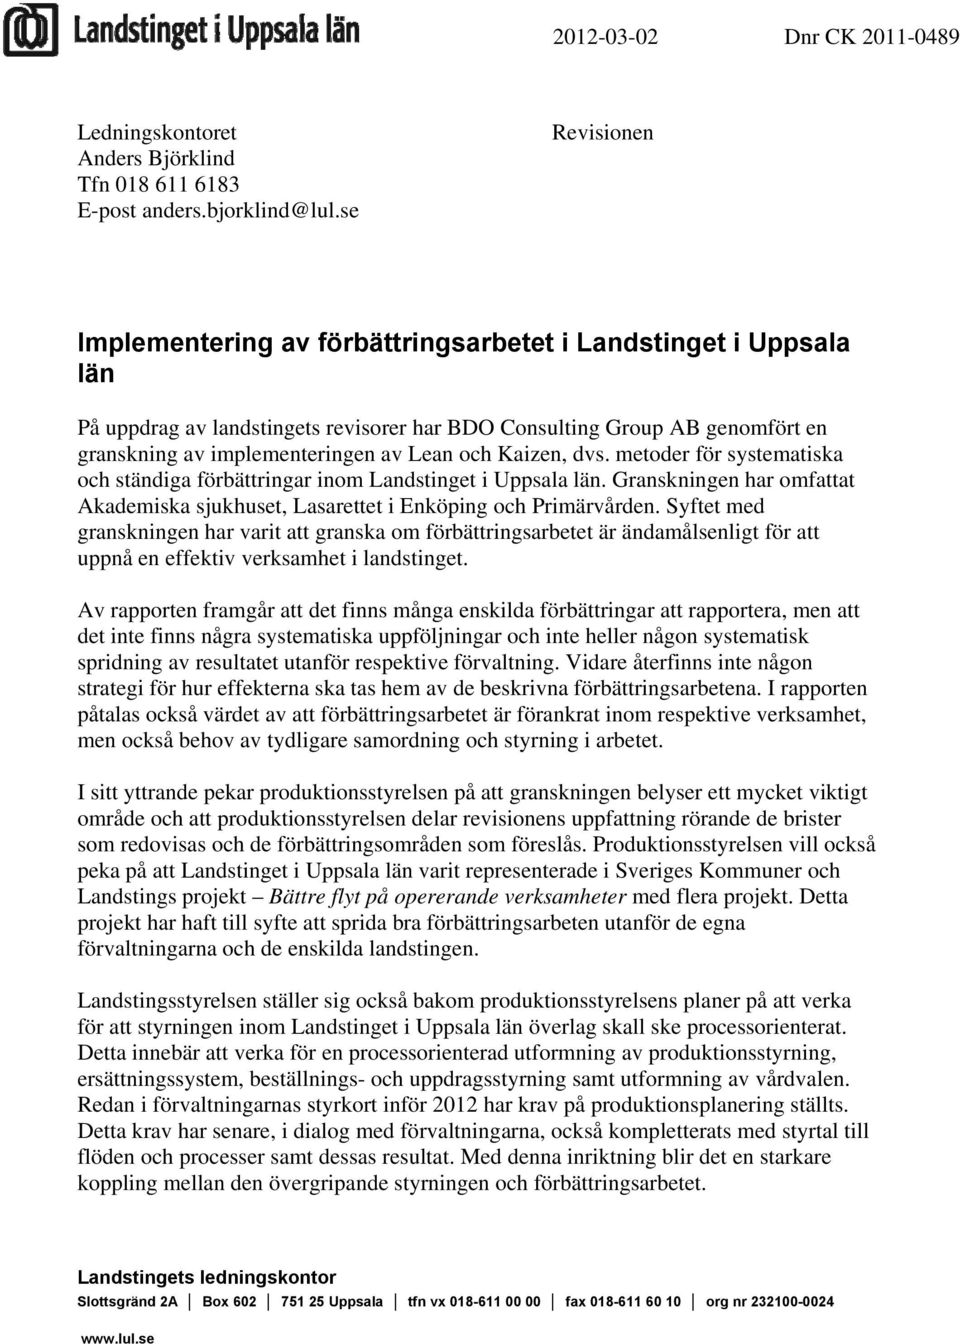 och Kaizen, dvs. metoder för systematiska och ständiga förbättringar inom Landstinget i Uppsala län. Granskningen har omfattat Akademiska sjukhuset, Lasarettet i Enköping och Primärvården.